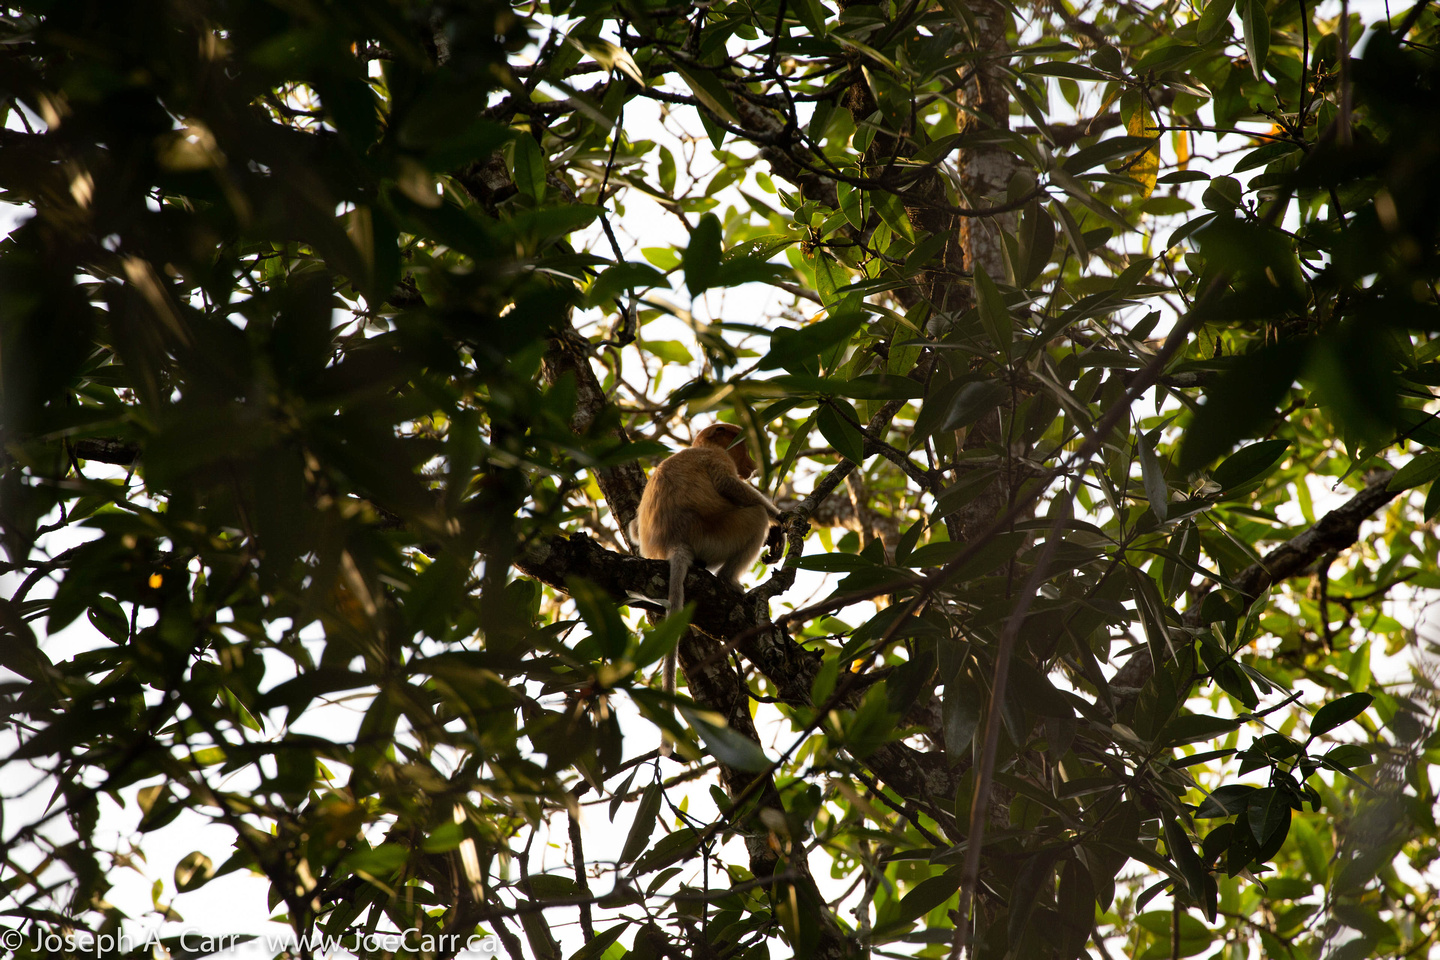 Proboscis monkey in a tree on the Brunei River